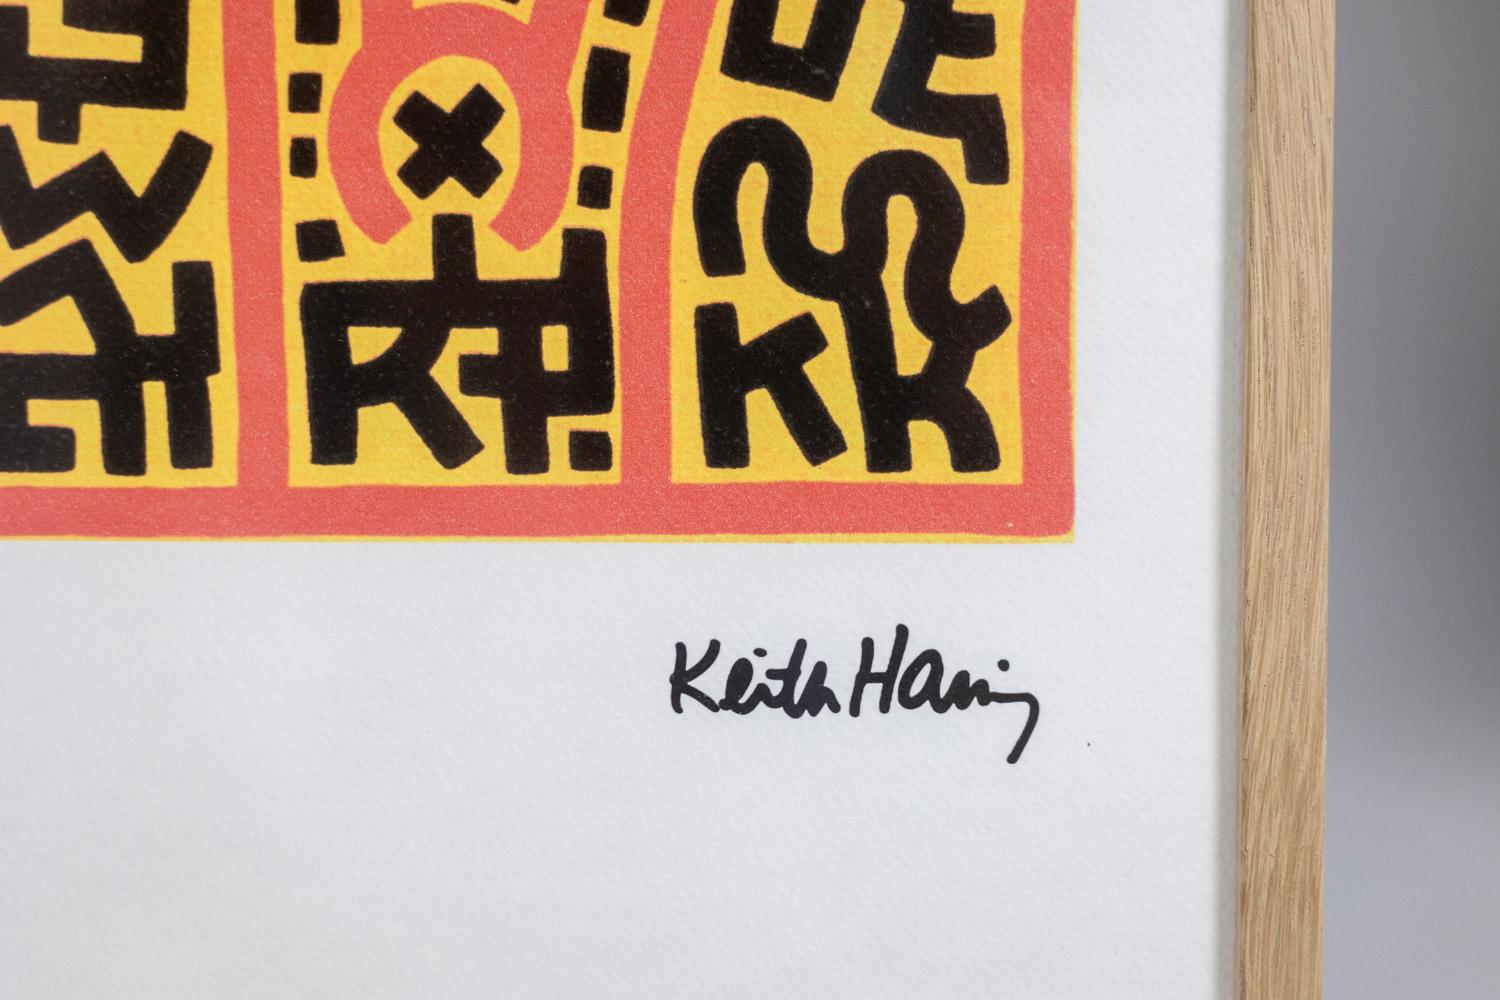 Keith Haring, signiert und nummeriert.

Abstrakter Siebdruck einer Figur in Orange-, Gelb- und Schwarztönen in einem blonden Eichenrahmen.

Nummeriert 91/150.

Amerikanische Arbeiten aus den 1990er Jahren.

Abmessungen: B 50 x H 70 x T 2